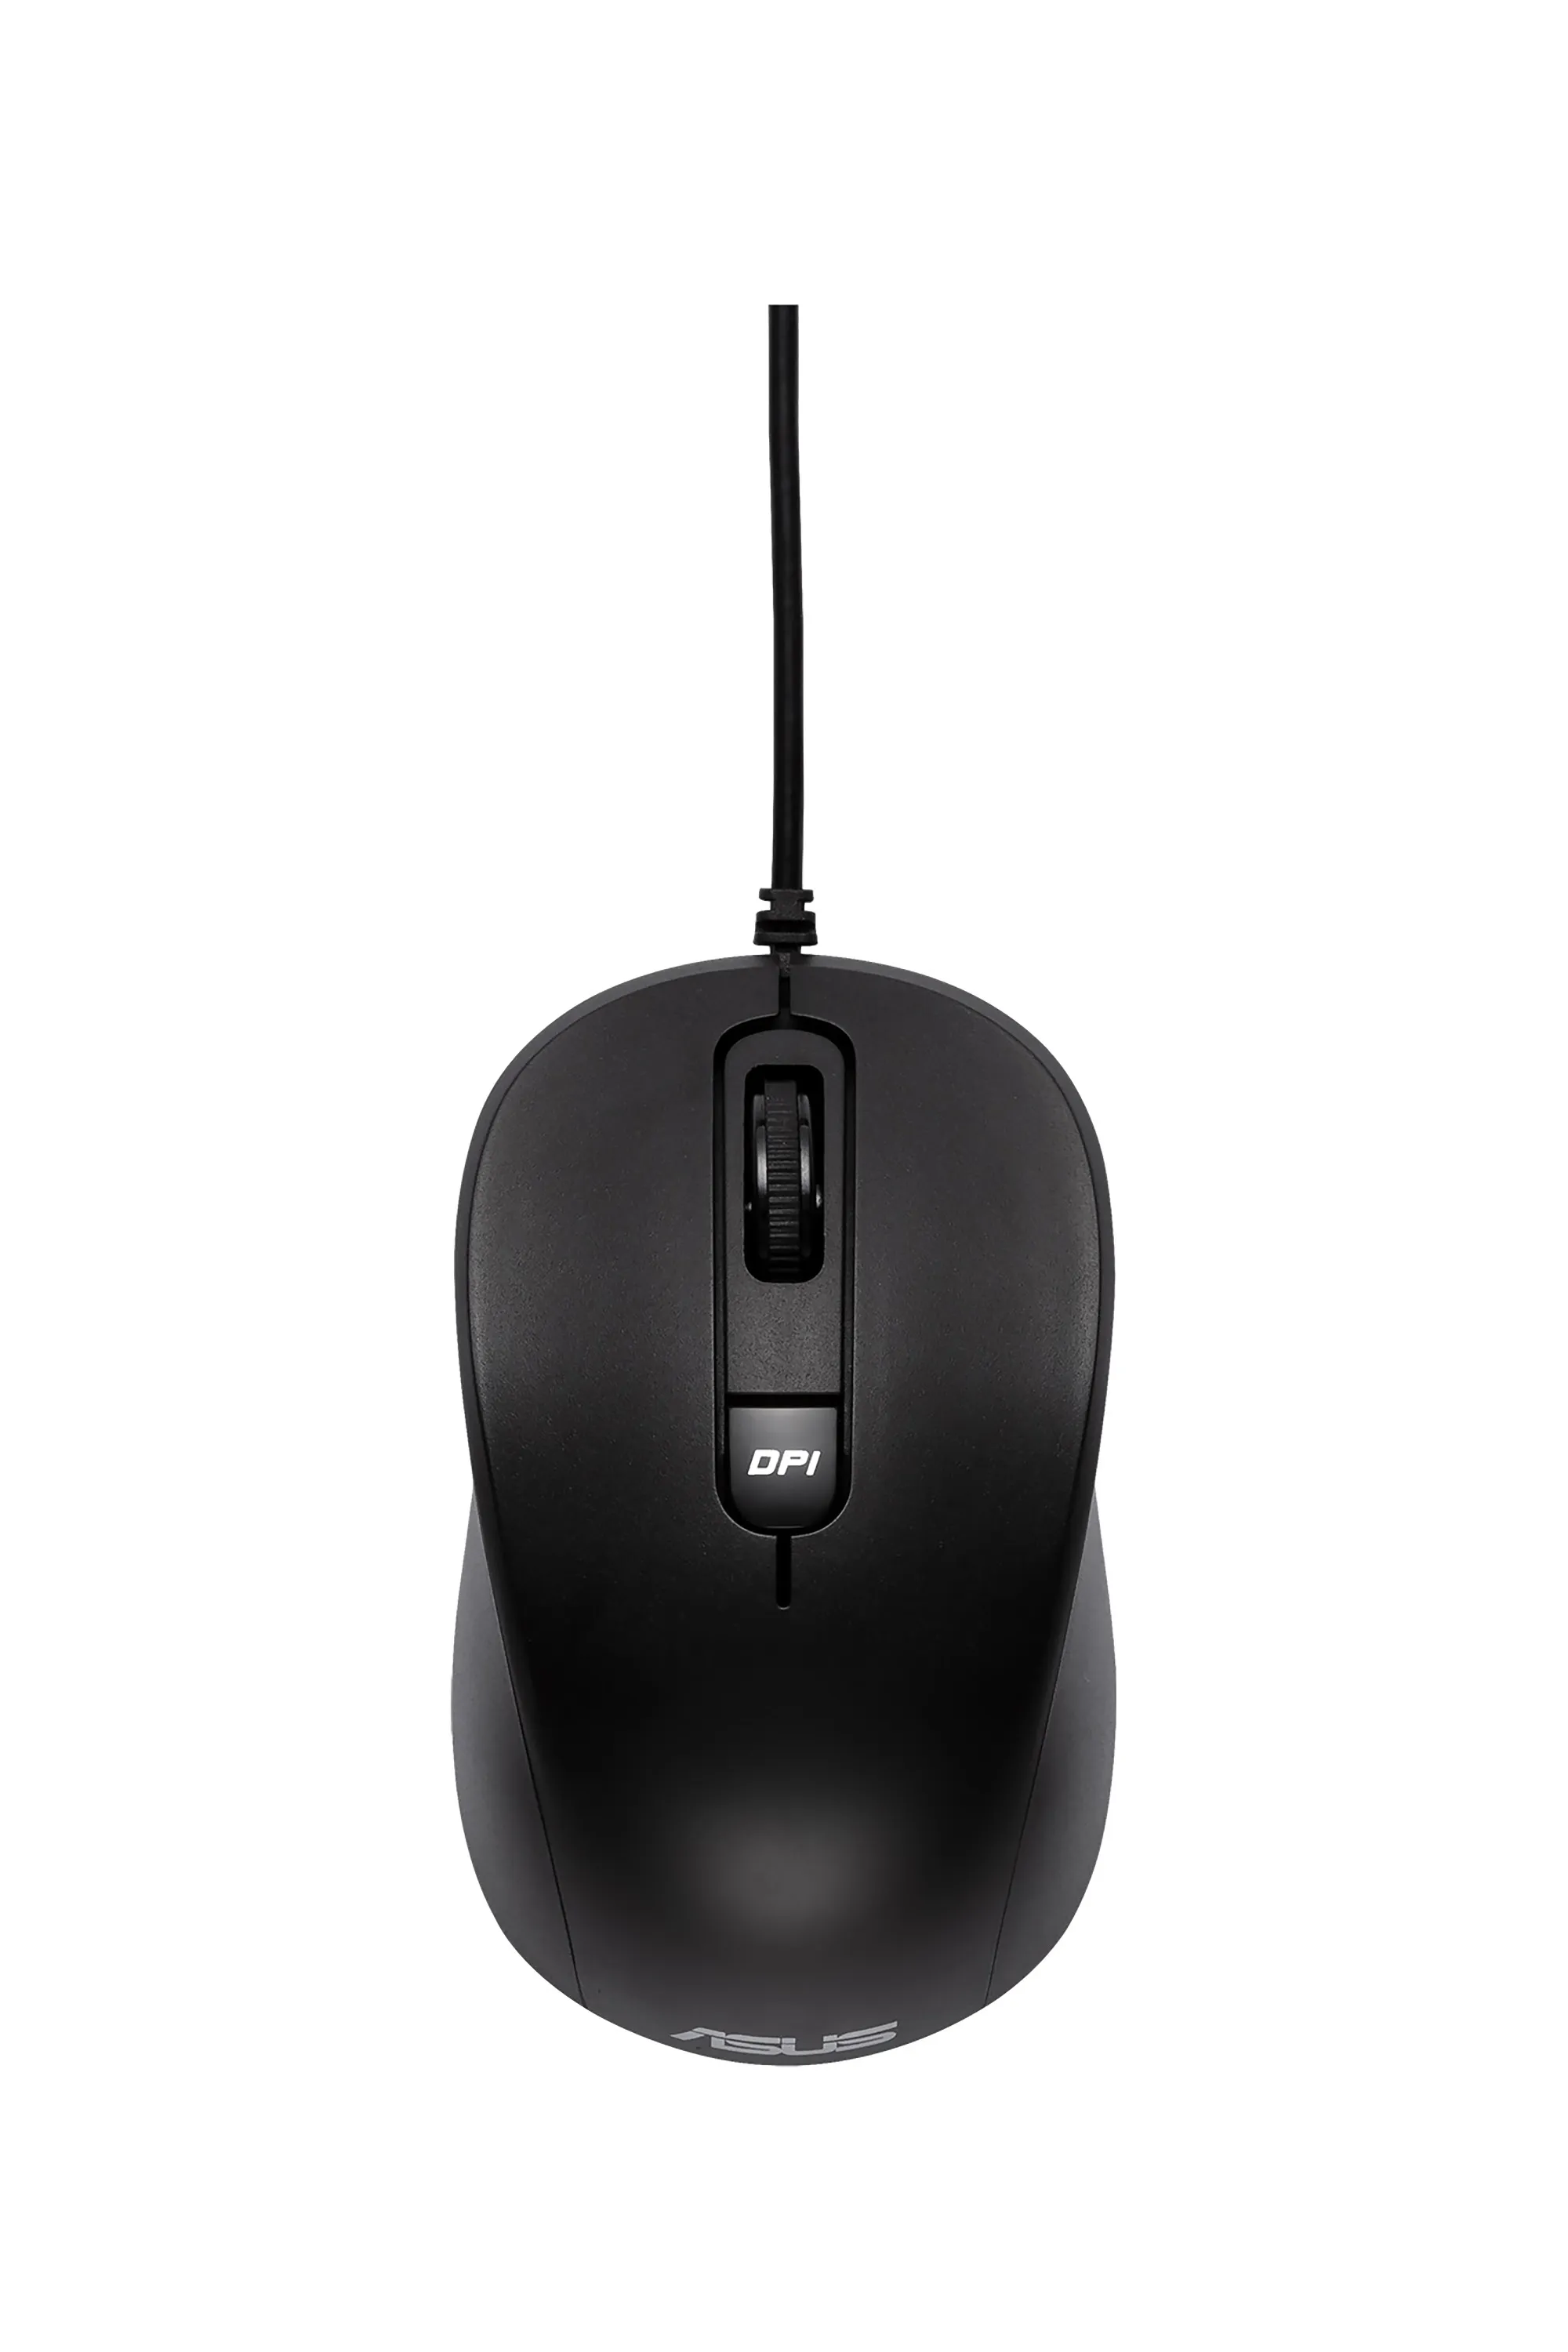 Vente ASUS Optical Mouse MU101C Wired 1.5m USB 1000dpi ASUS au meilleur prix - visuel 4